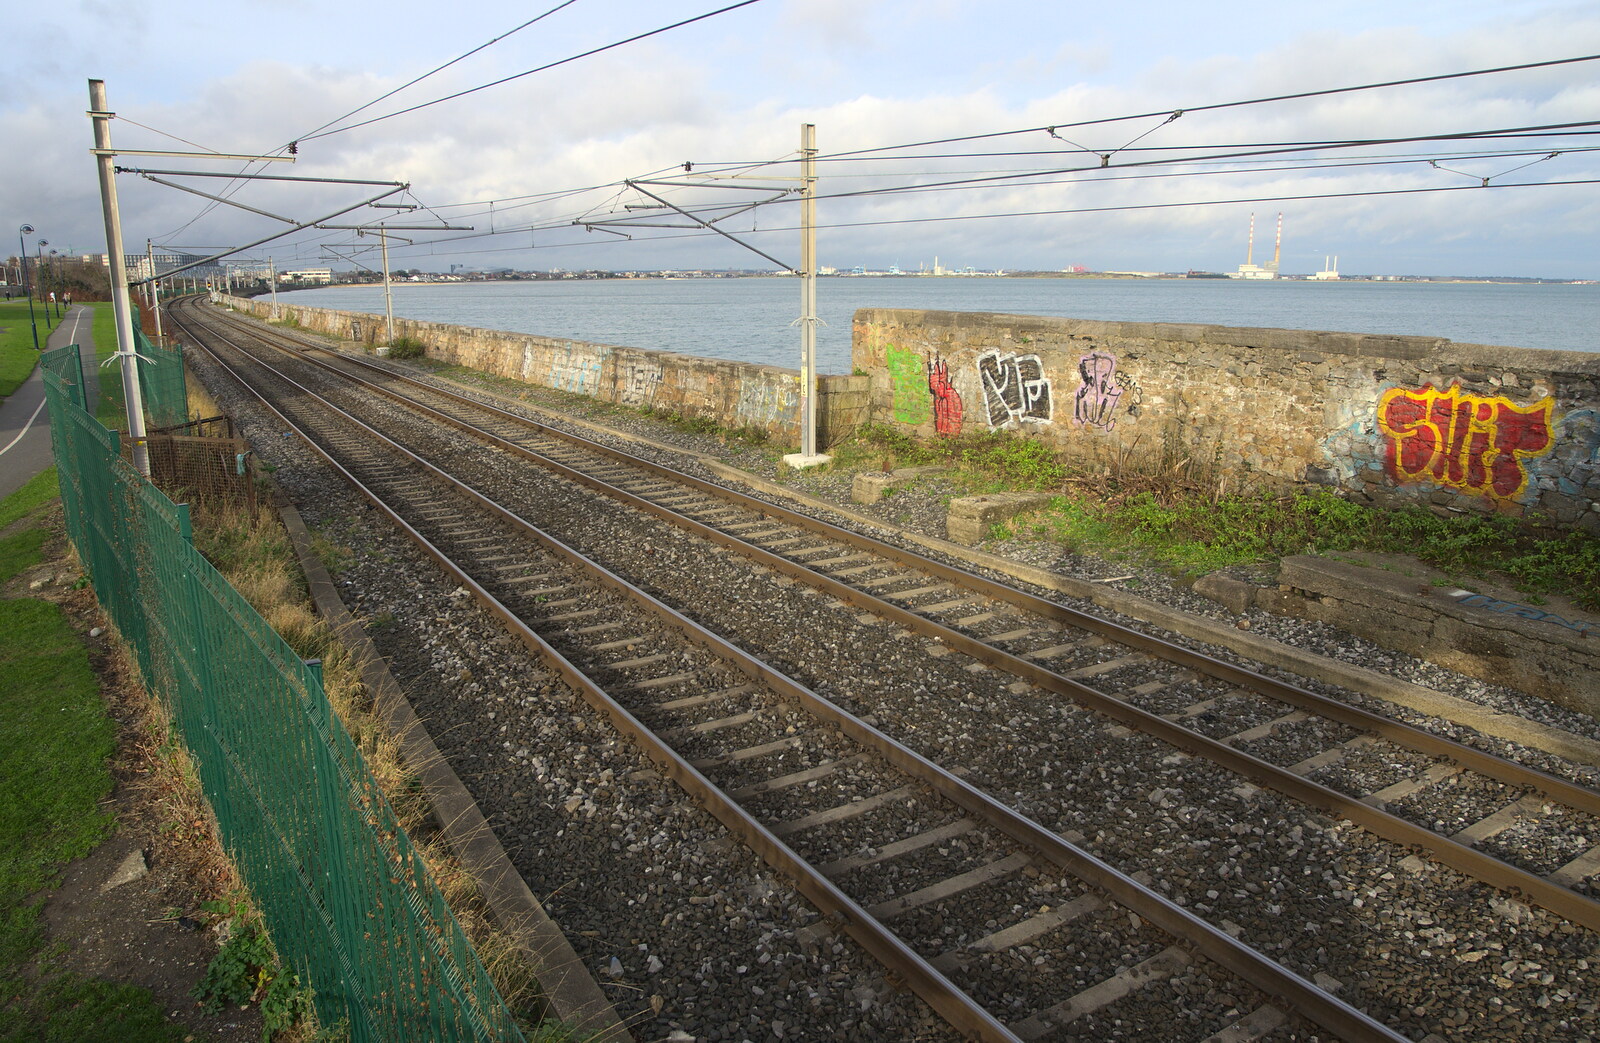 The DART tracks to Dublin from A Morning in Blackrock, County Dublin, Ireland - 8th January 2012